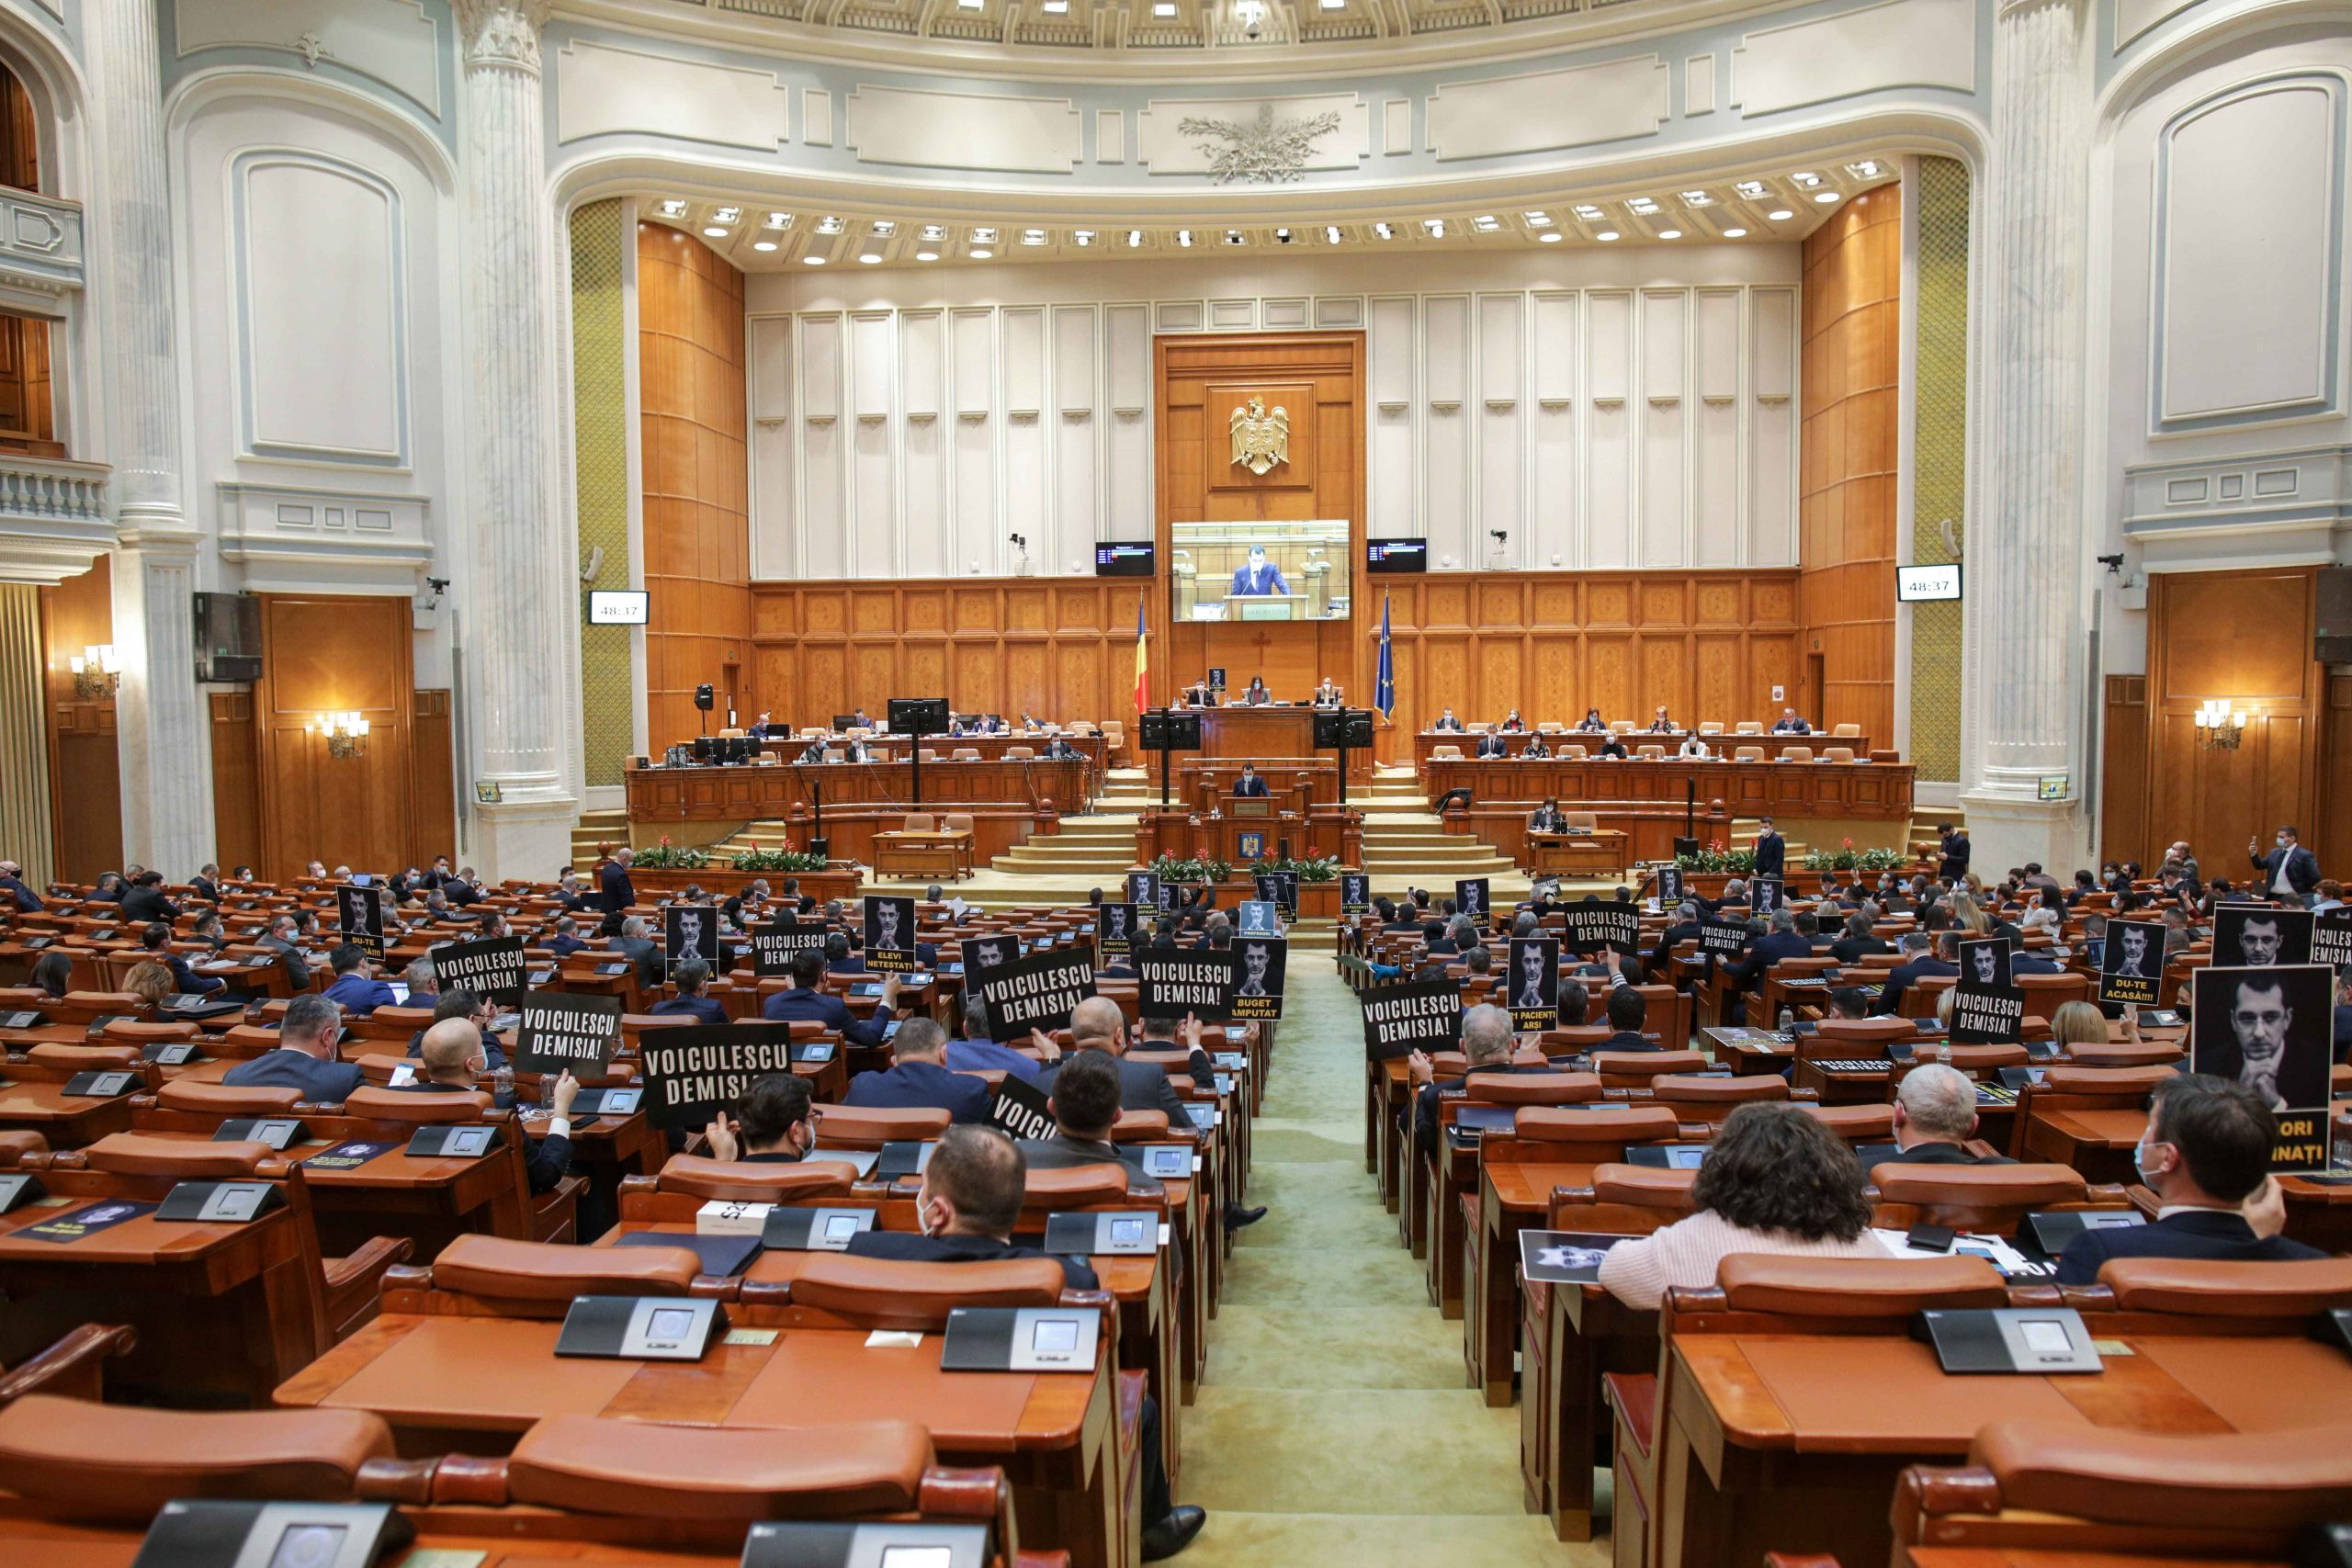 Parlament: A început ședința în care se dezbate revocarea din funcție a Avocatului Poporului, Renate Weber UPDATE: A fost revocată